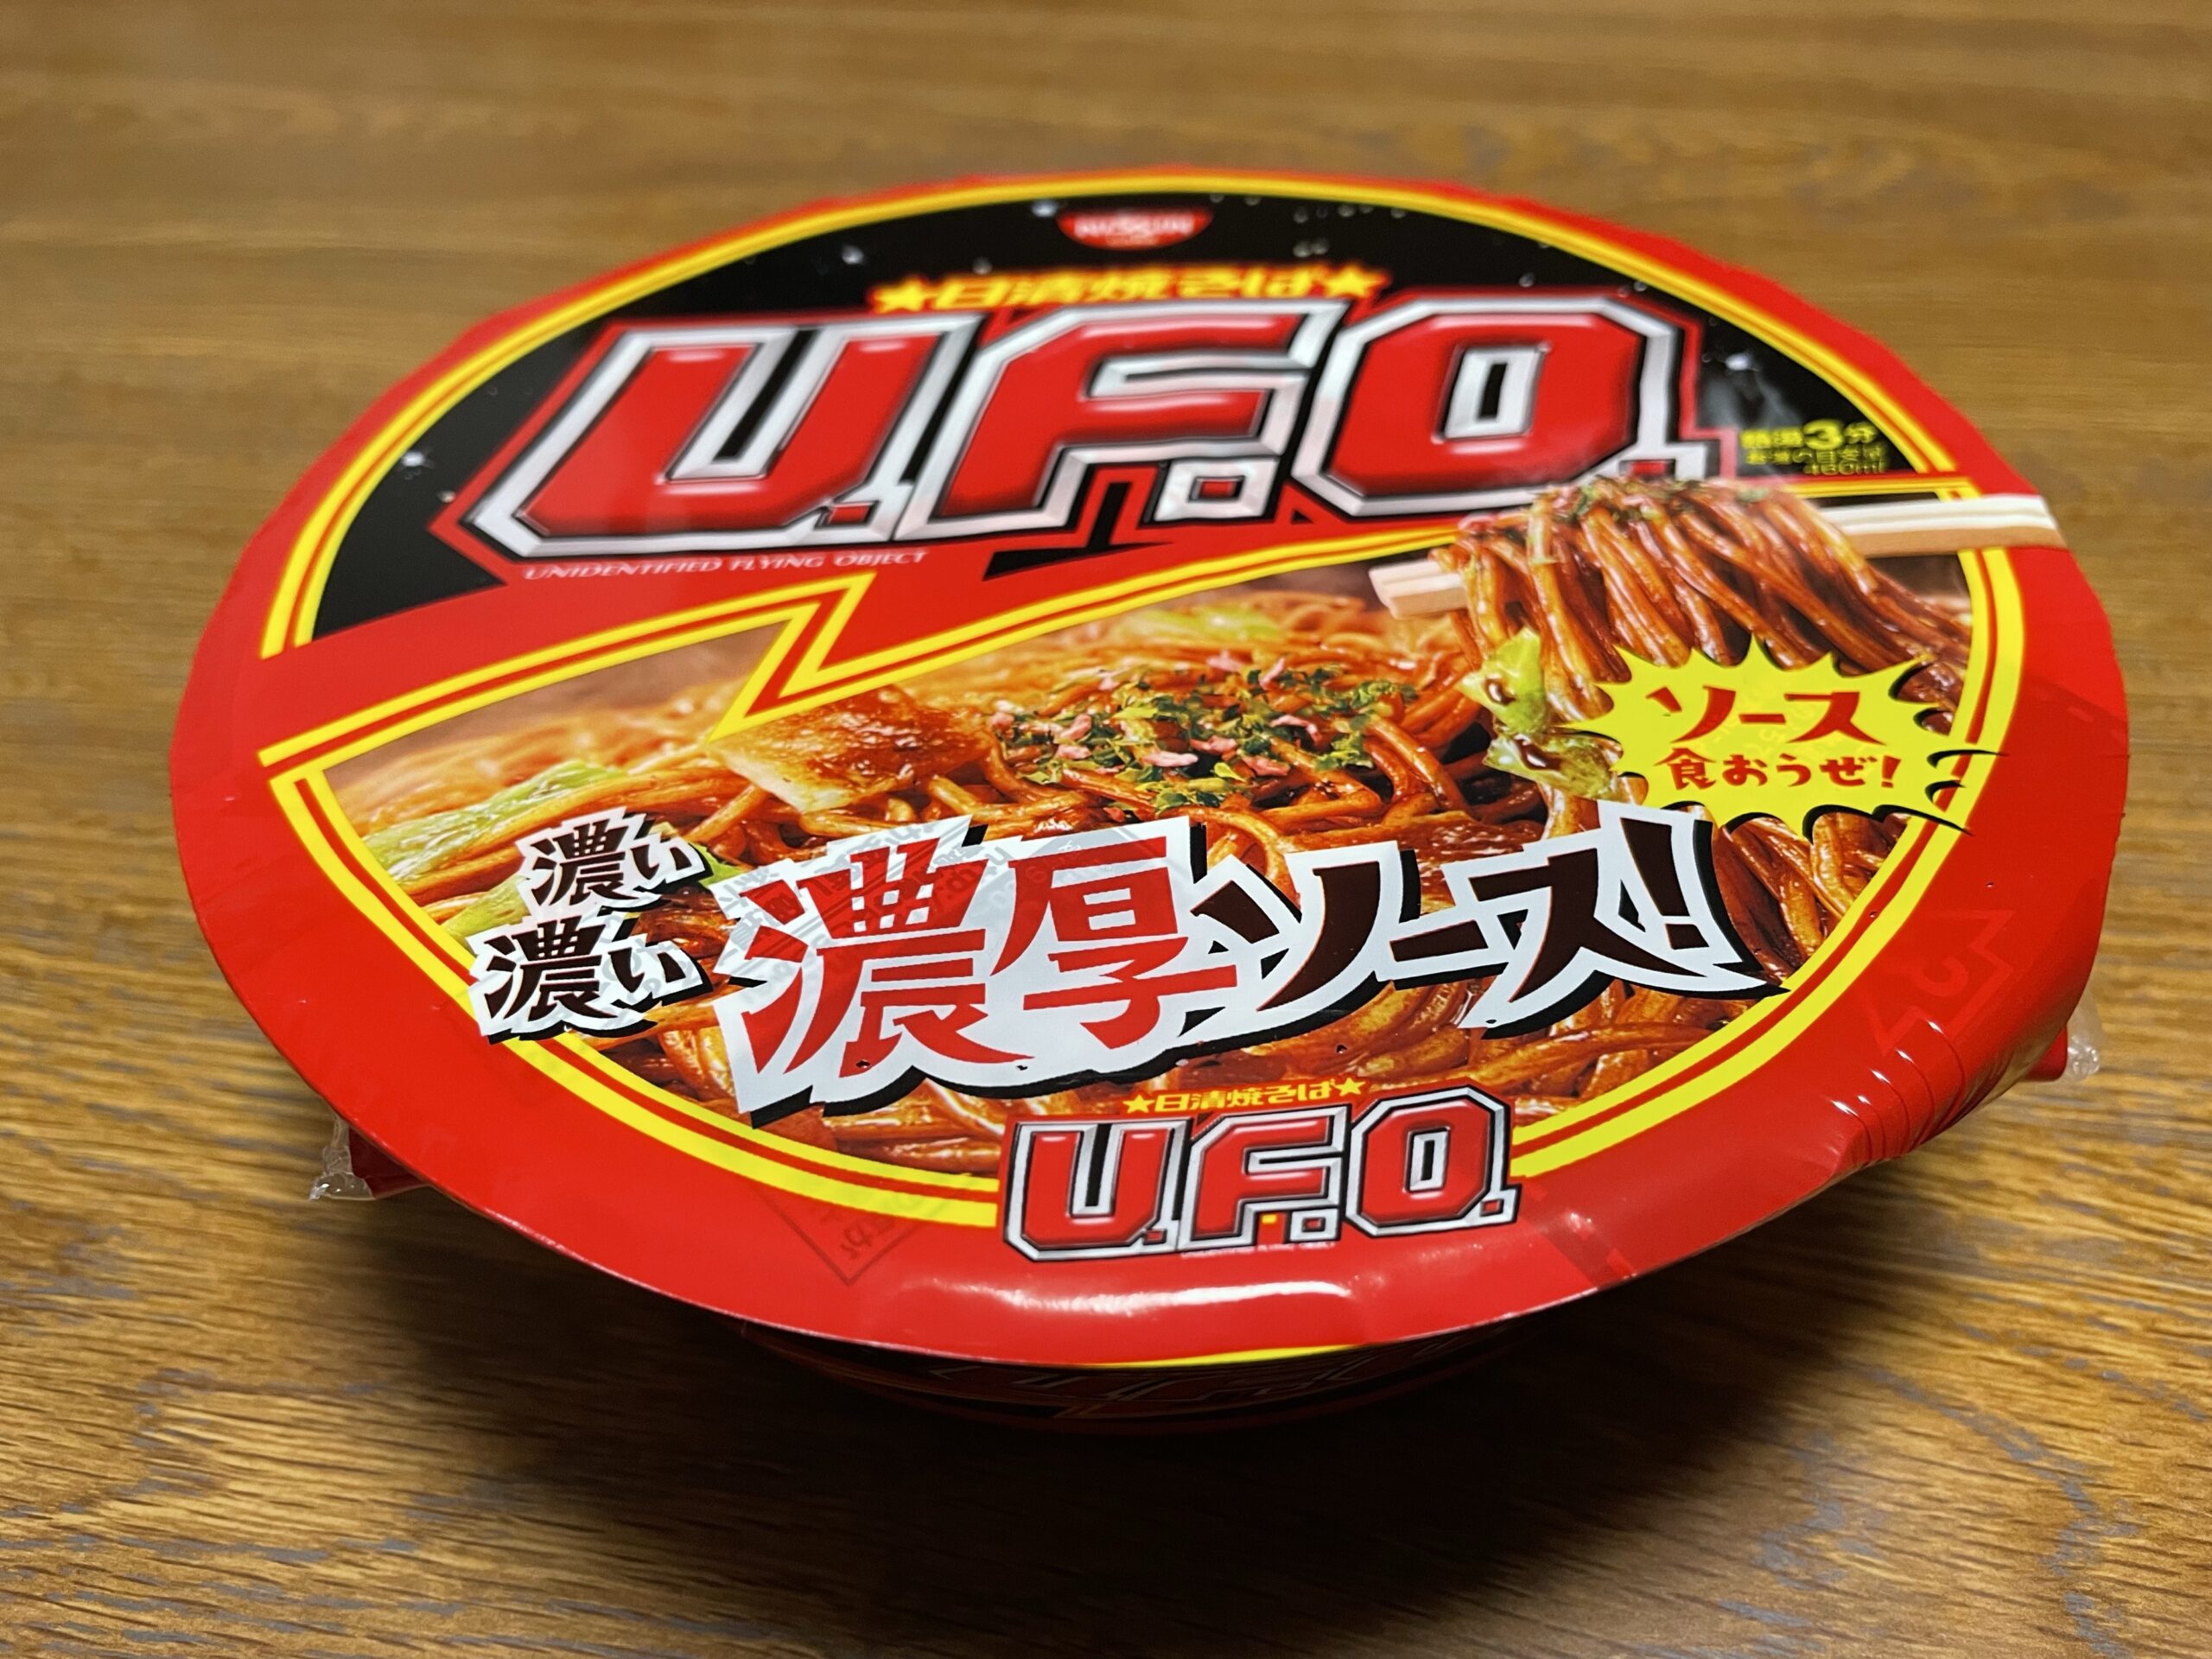 『日清焼きそば UFO 濃厚ソース味』を食べてみました!!